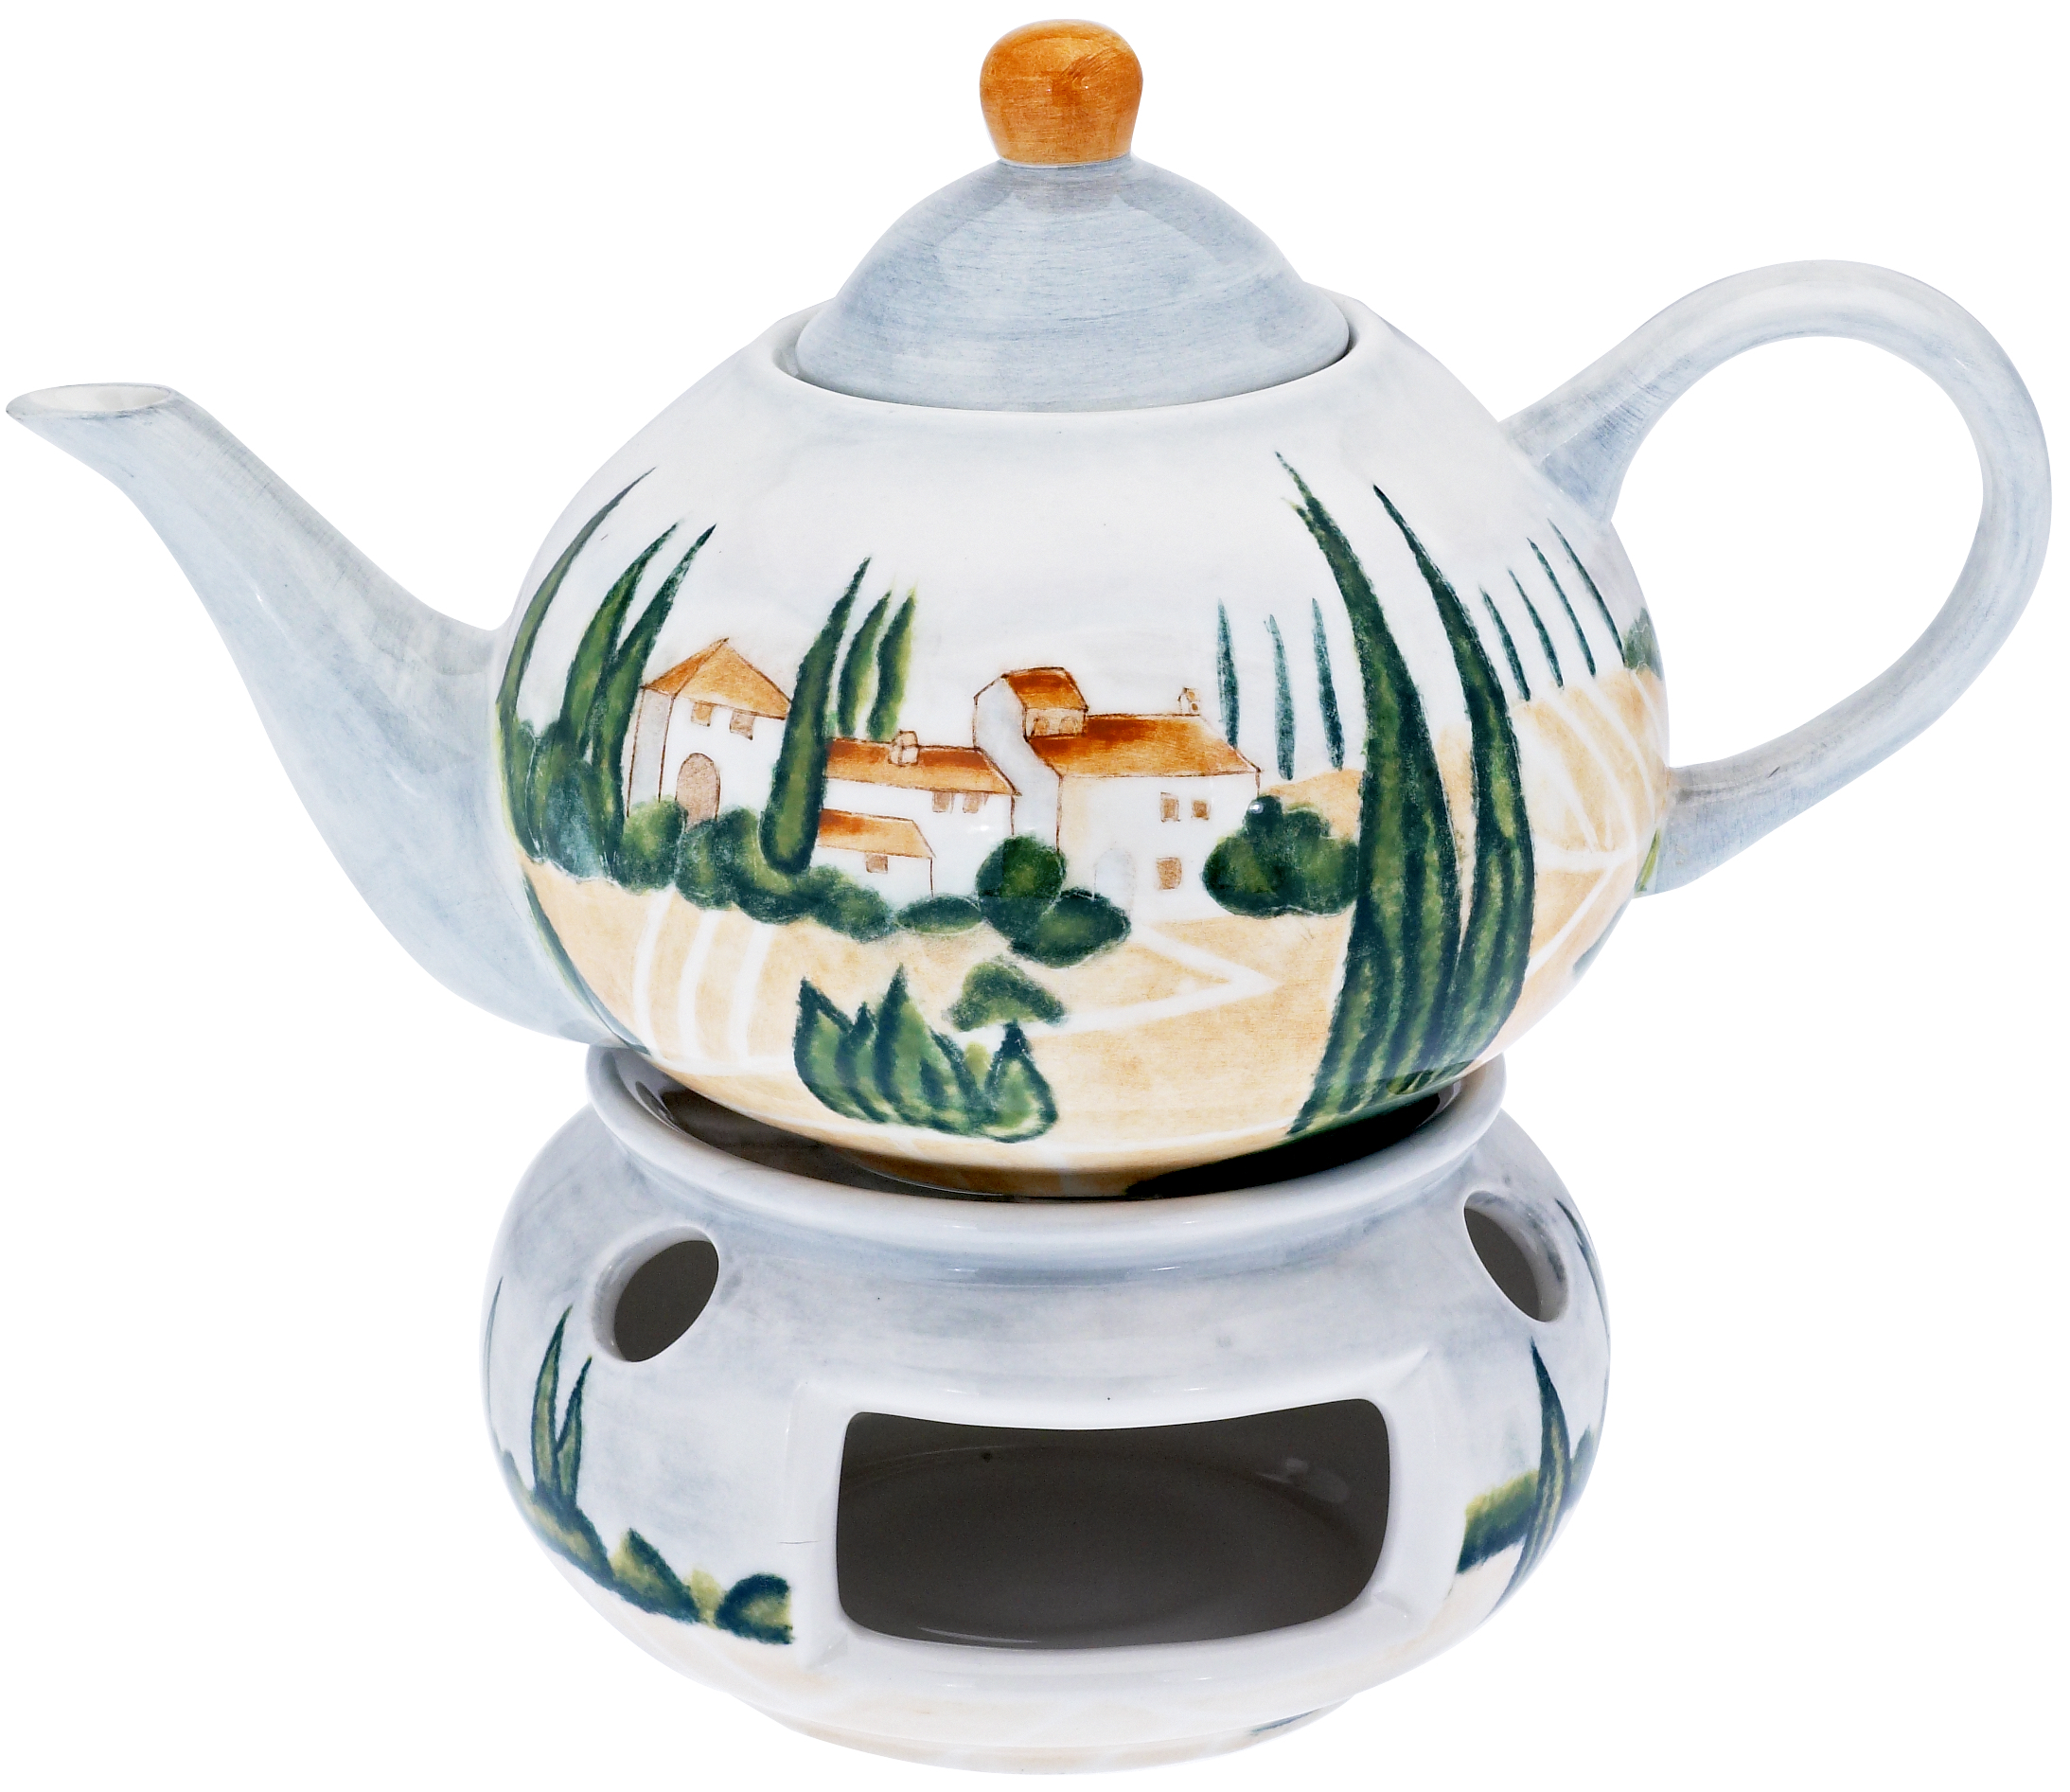 Keramik Teekanne 1,1 ltr. handbemalt  "SIENA" - Magu 125 713